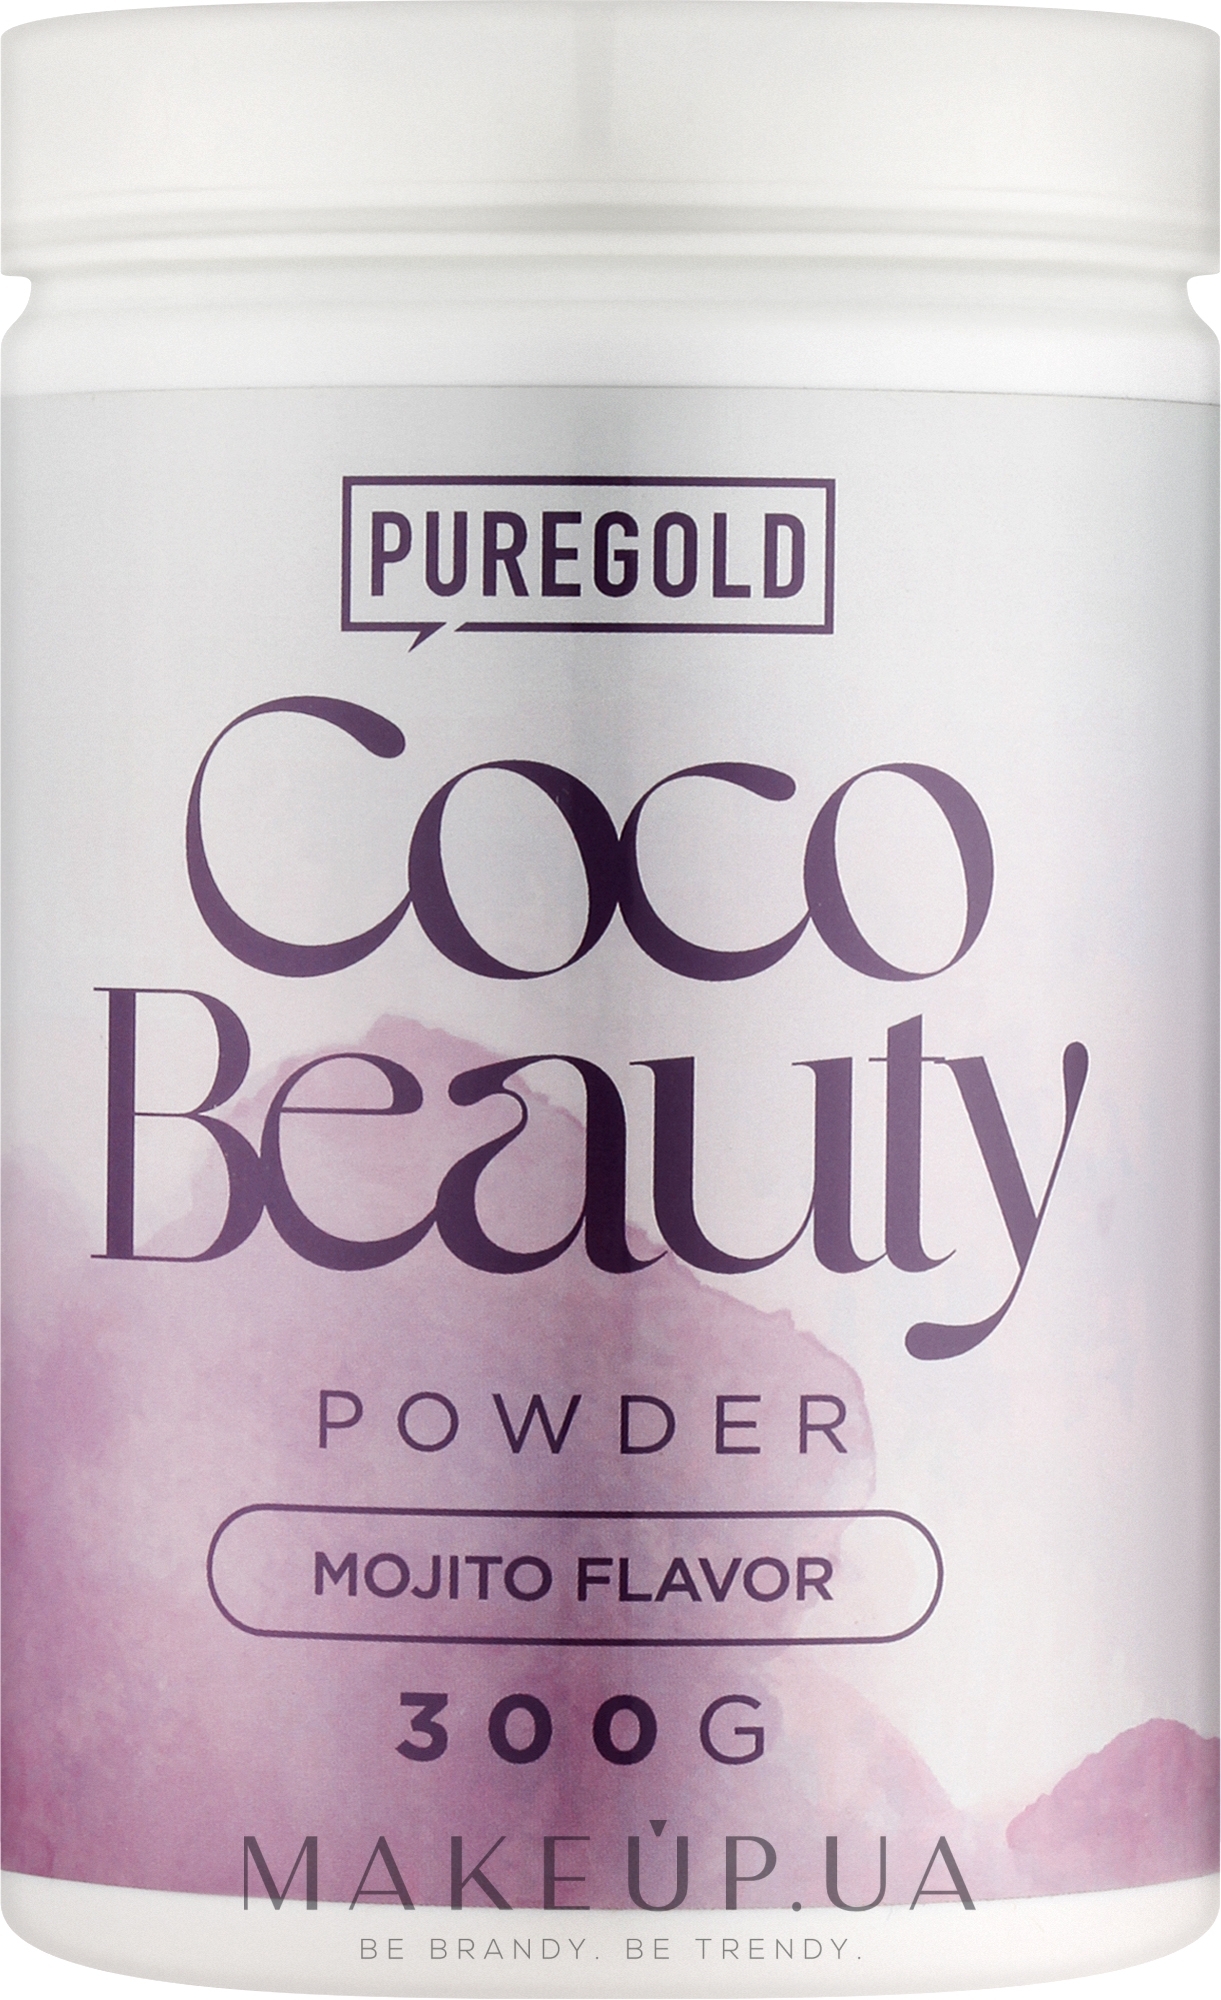 Коллагеновый напиток, мохито - PureGold CocoBeauty Powder — фото 300g